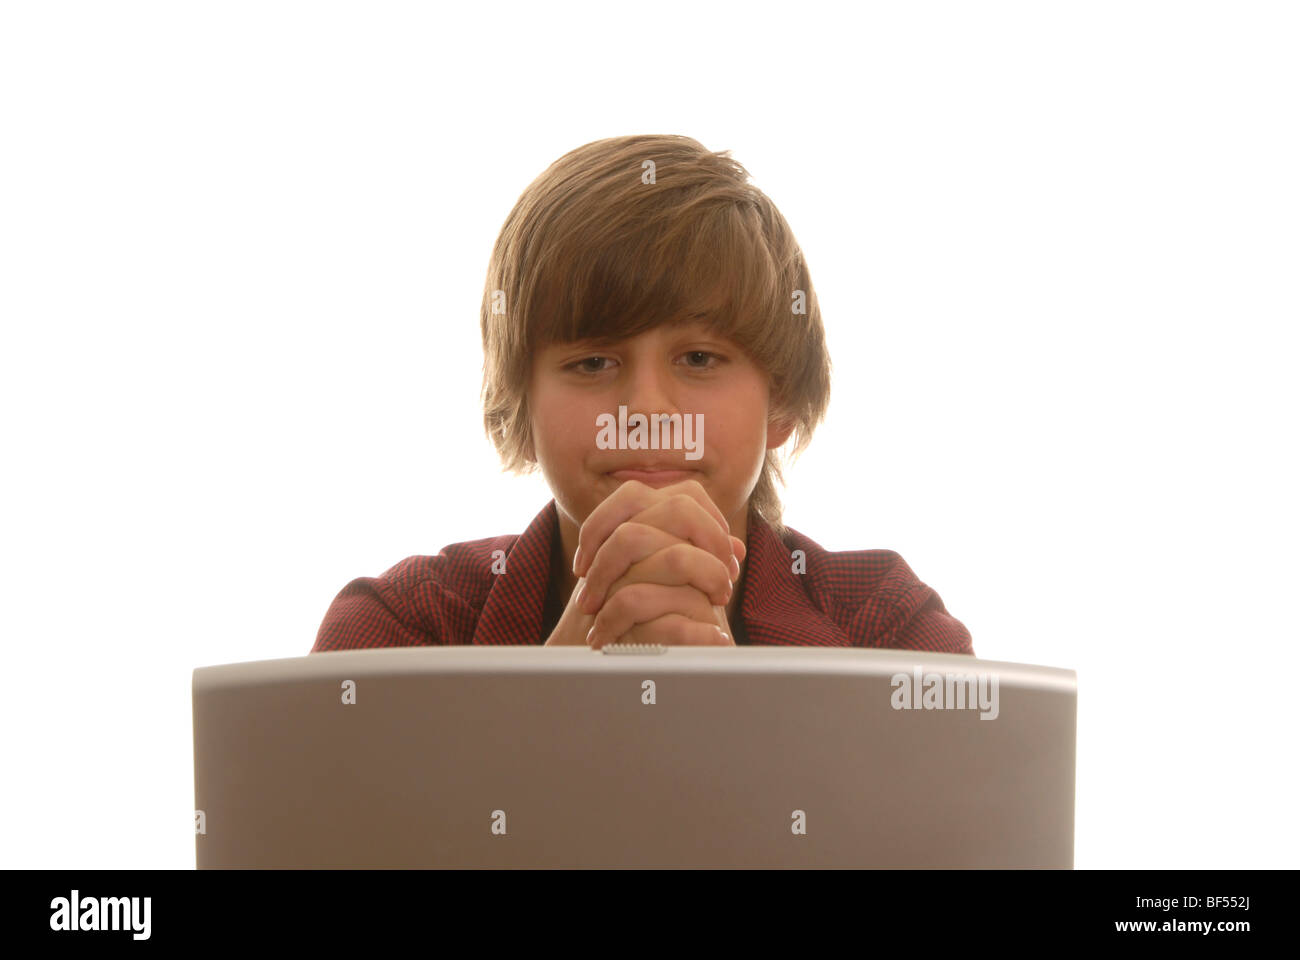 Boy, 16, behind a laptop praying desperately Stock Photo